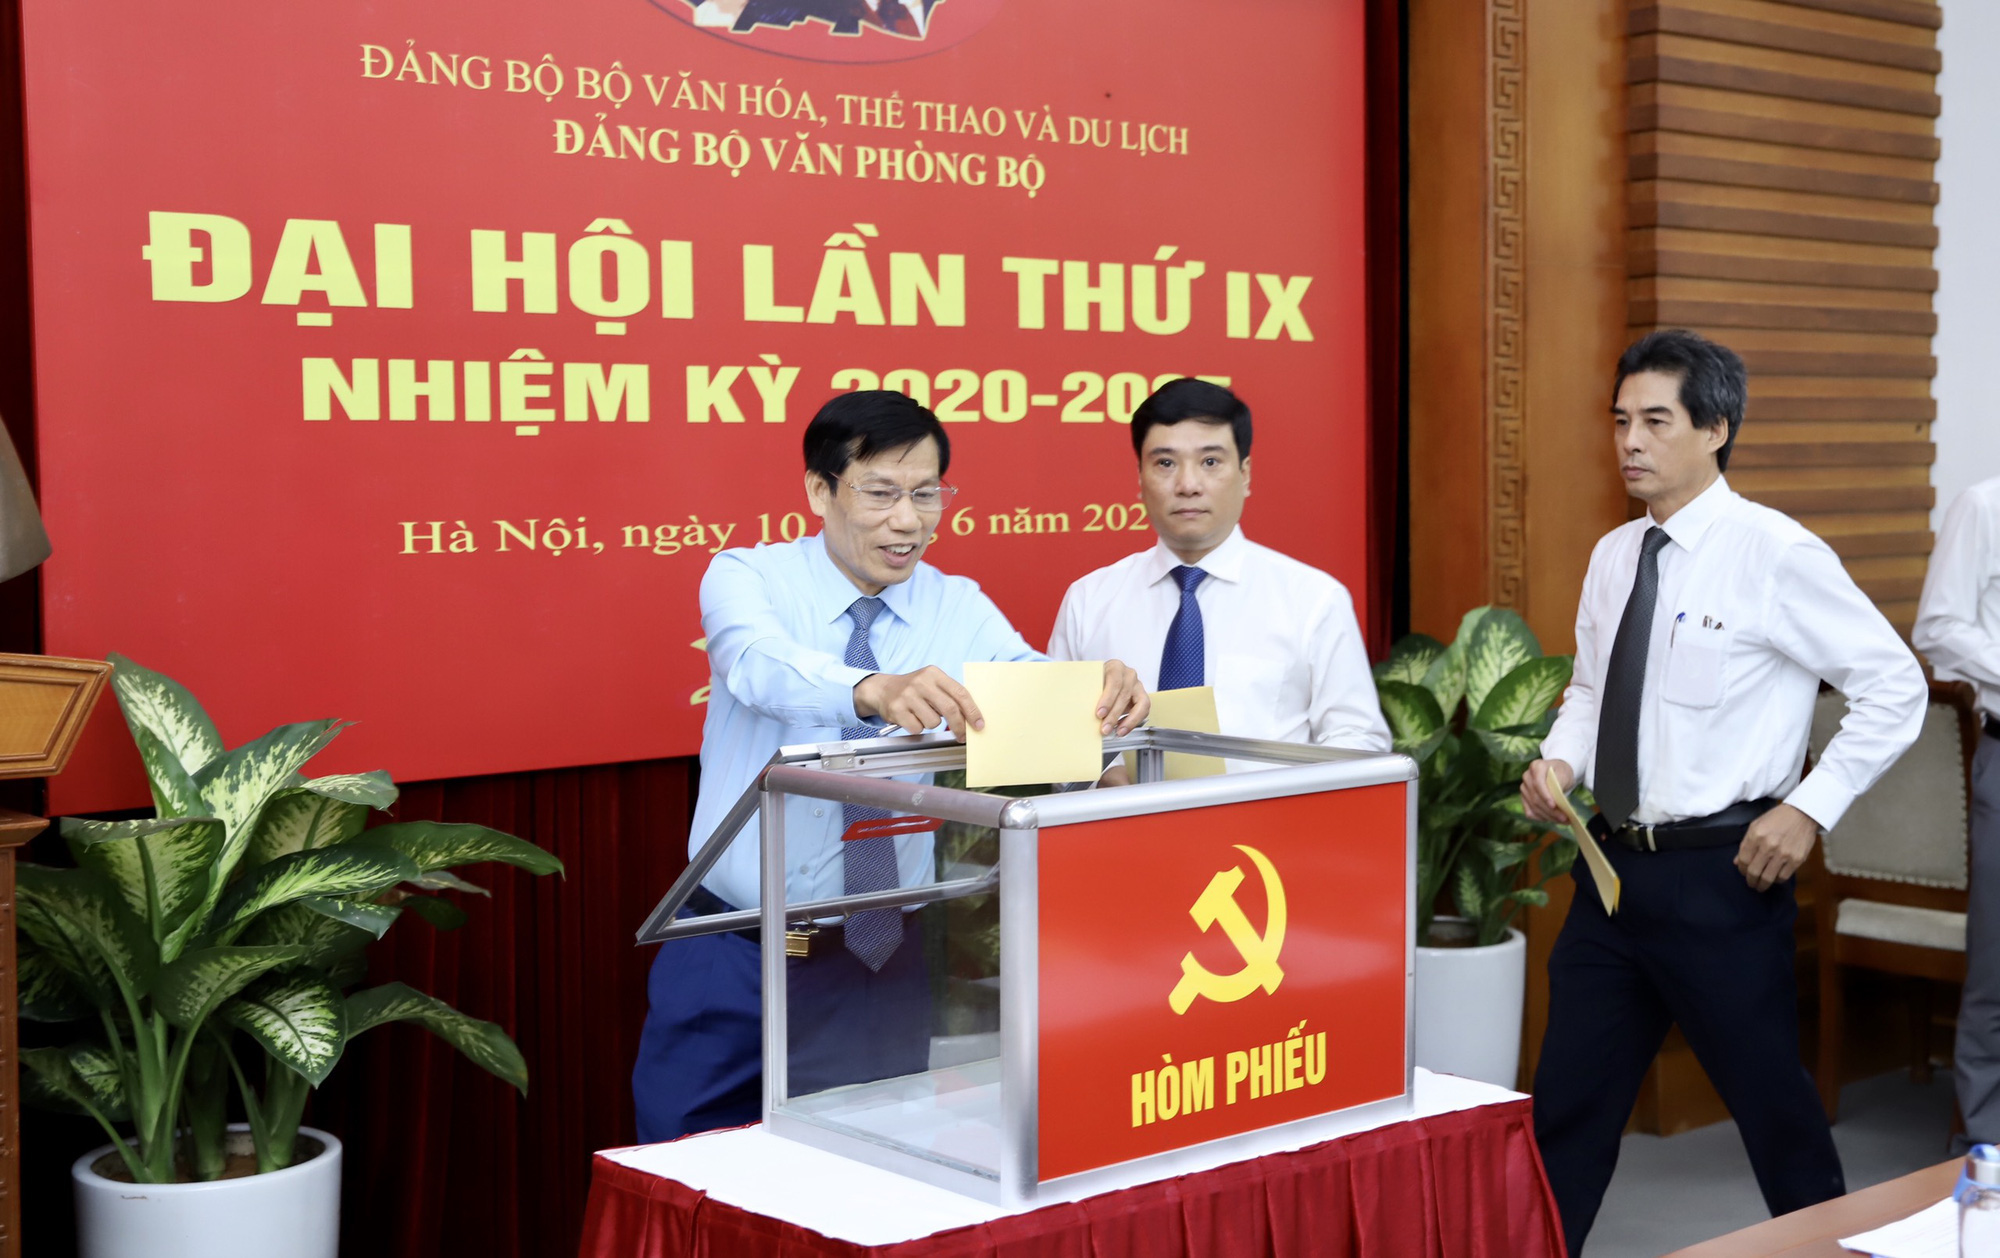  Ông Nguyễn Thái Bình tái đắc cử Bí thư Đảng ủy Văn phòng Bộ VHTTDL - Ảnh 4.